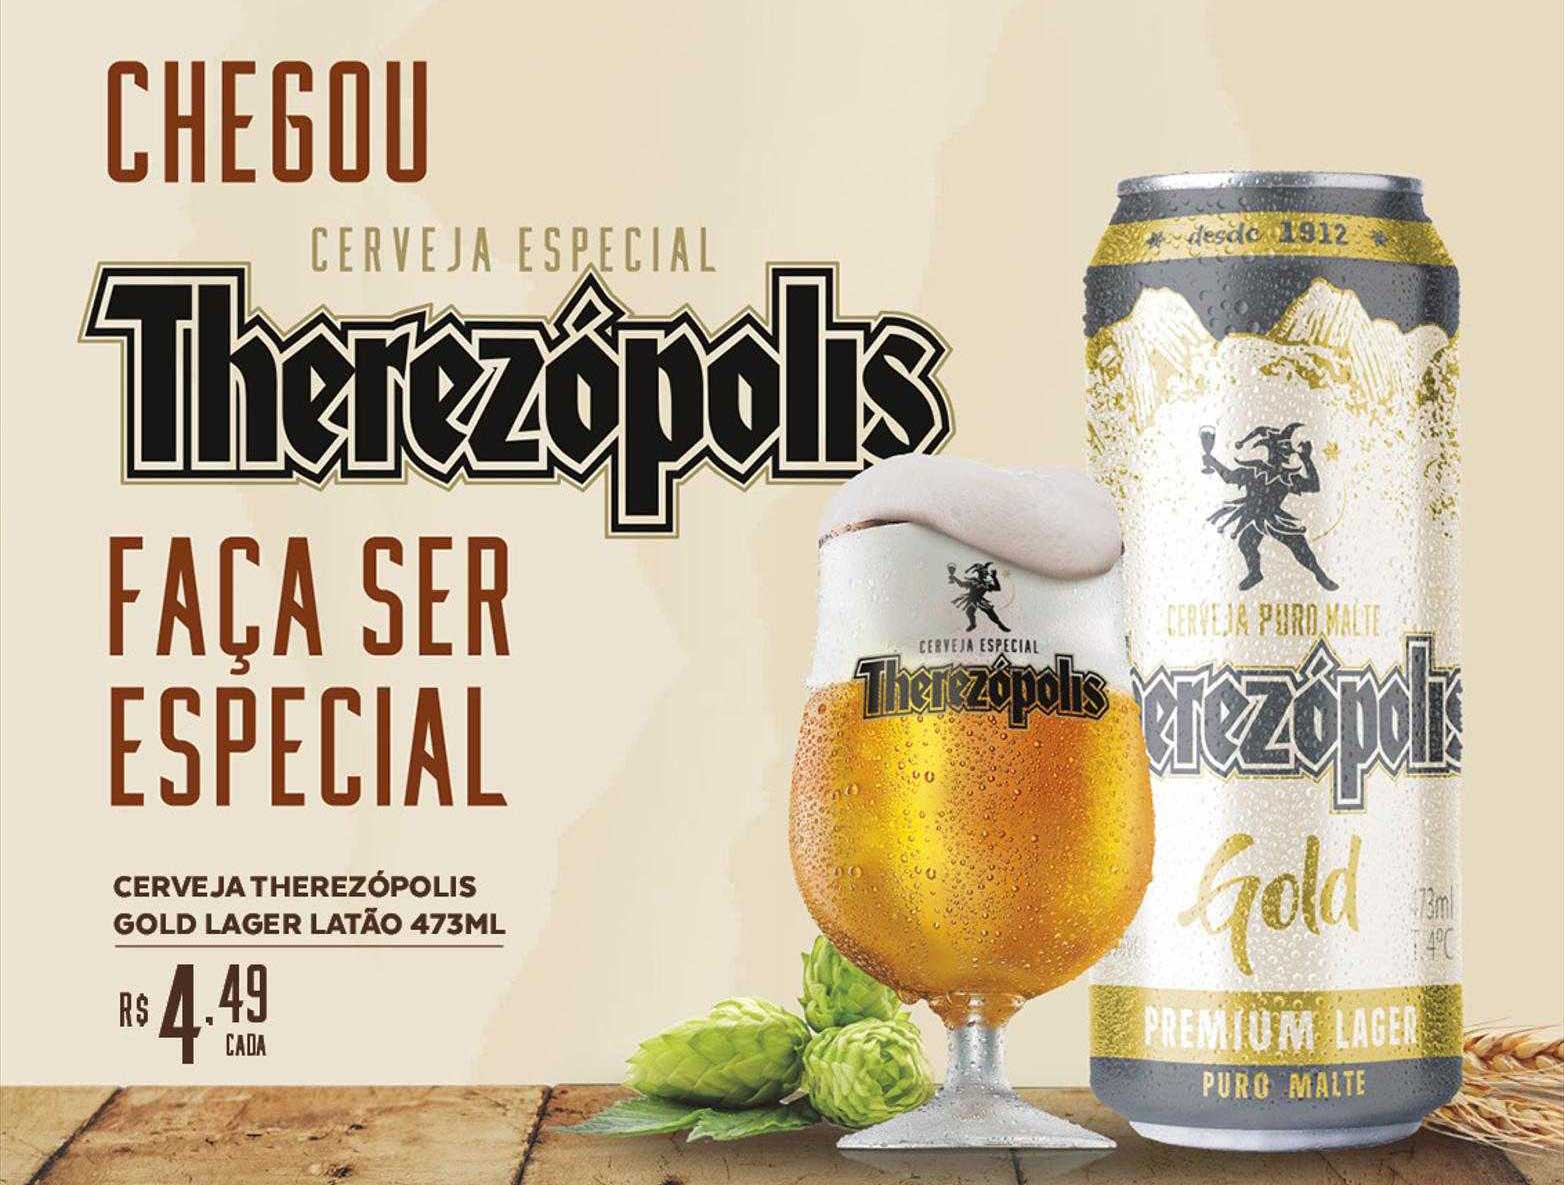 Bahamas Supermercados Cerveja Therezópolis Gold Lager Latão